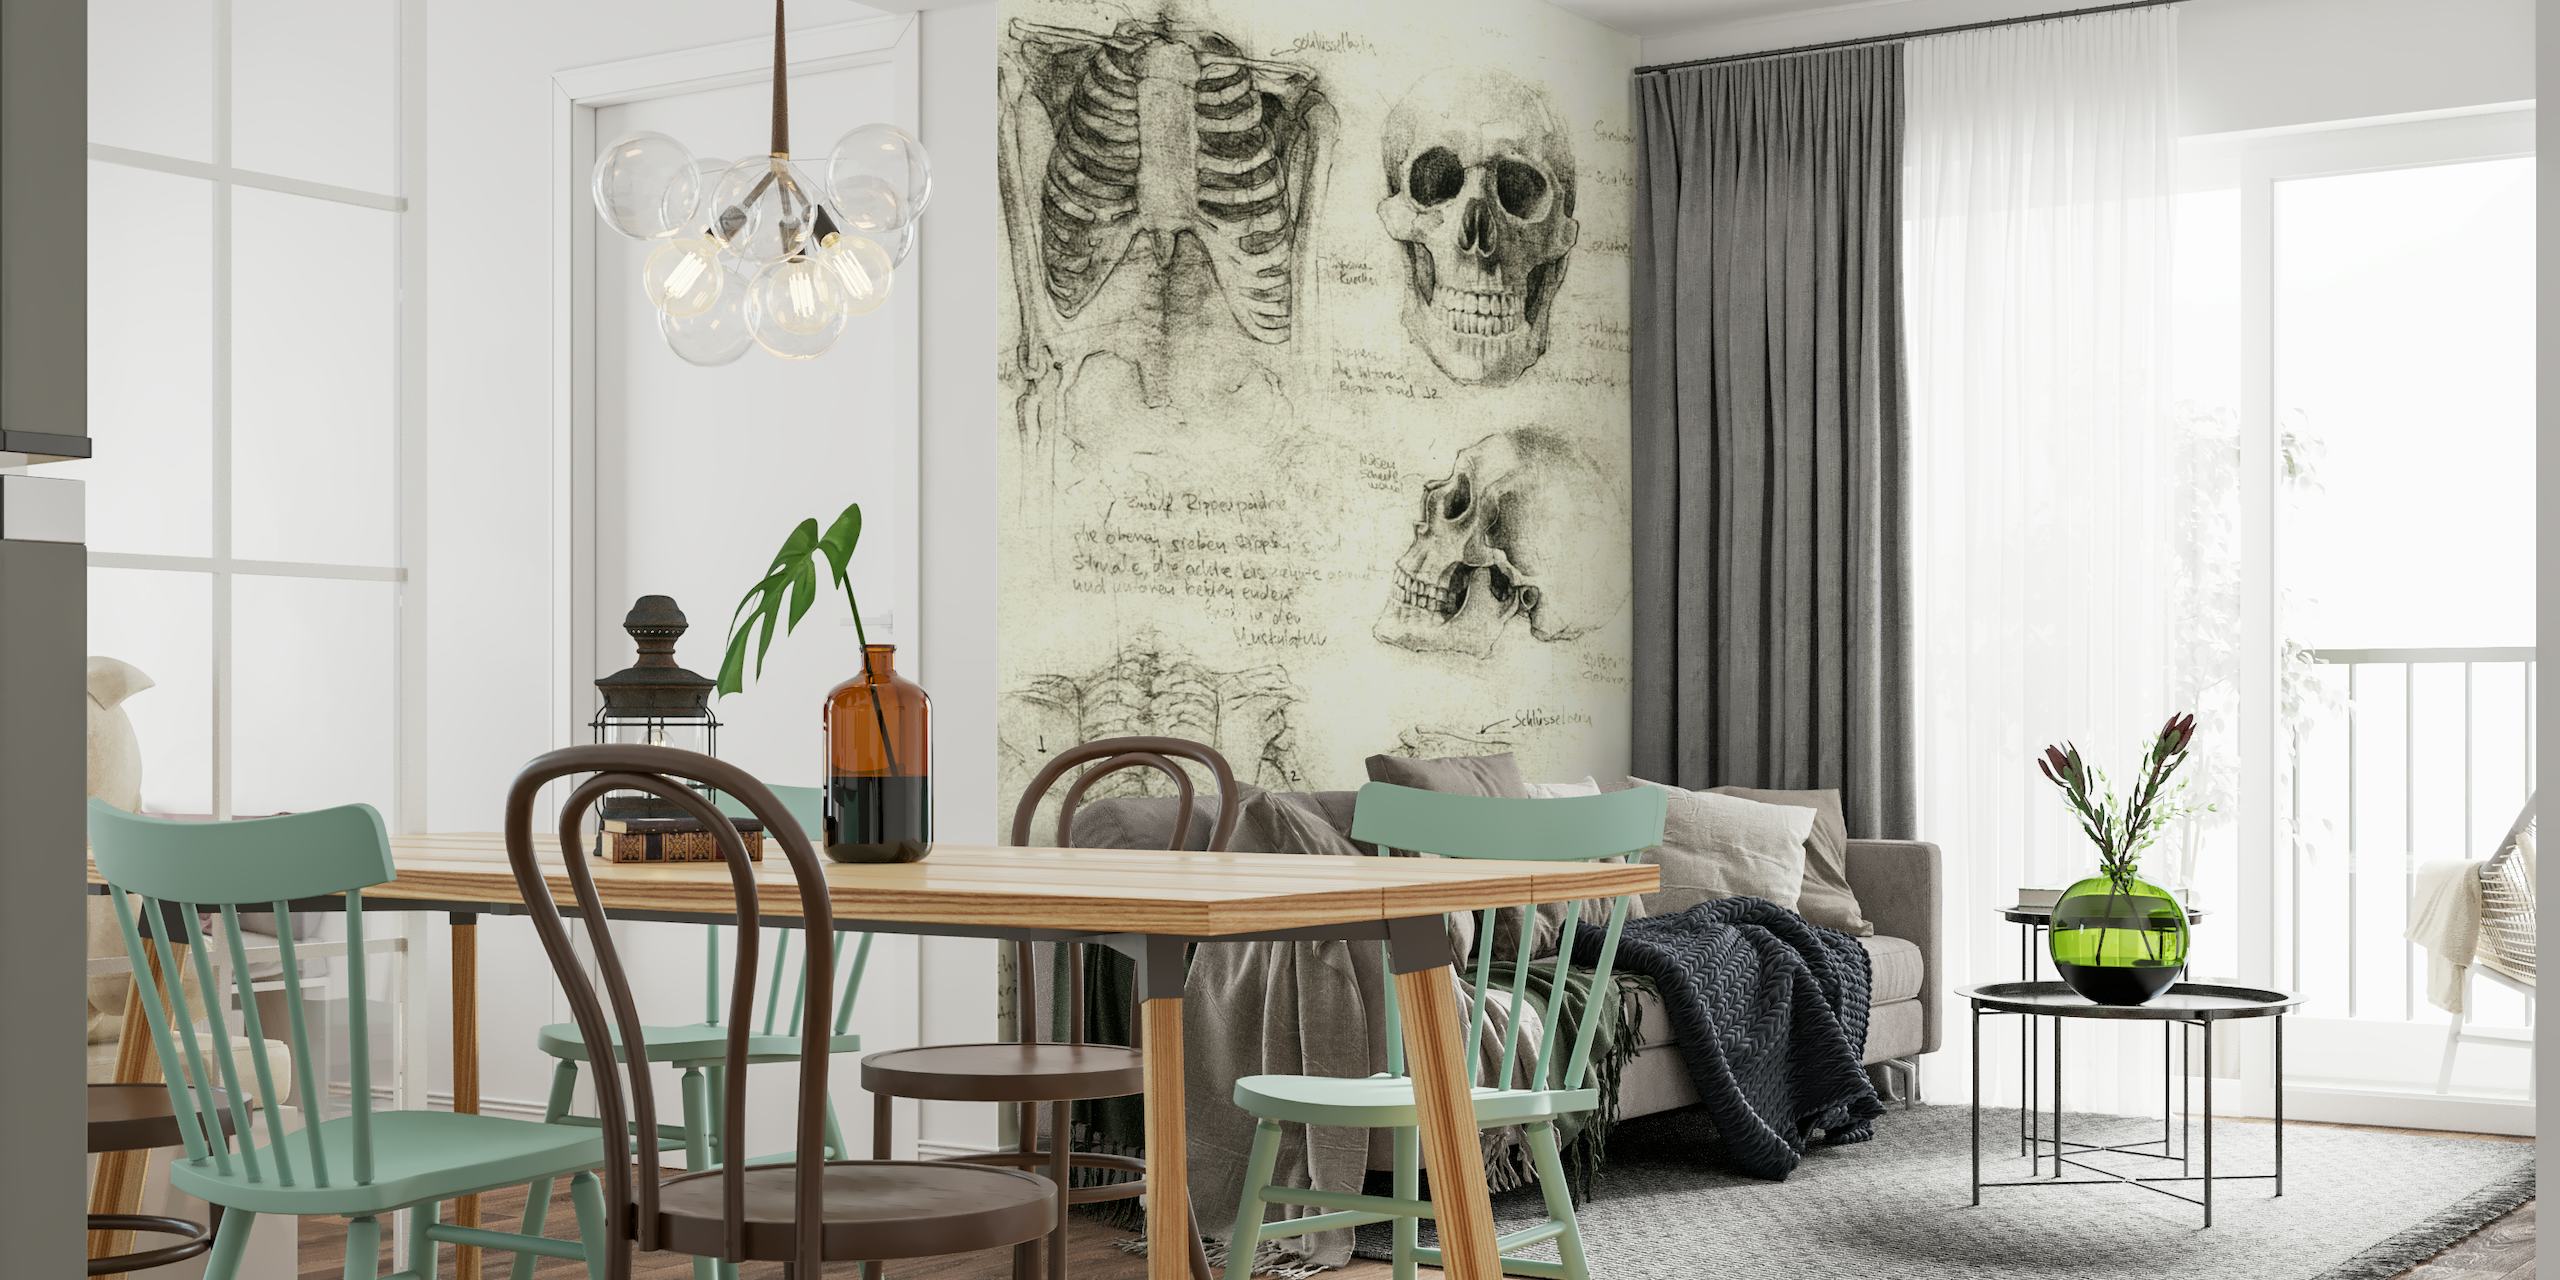 Esqueleto anatômico esboça mural de parede com desenhos detalhados de crânios e ossos humanos